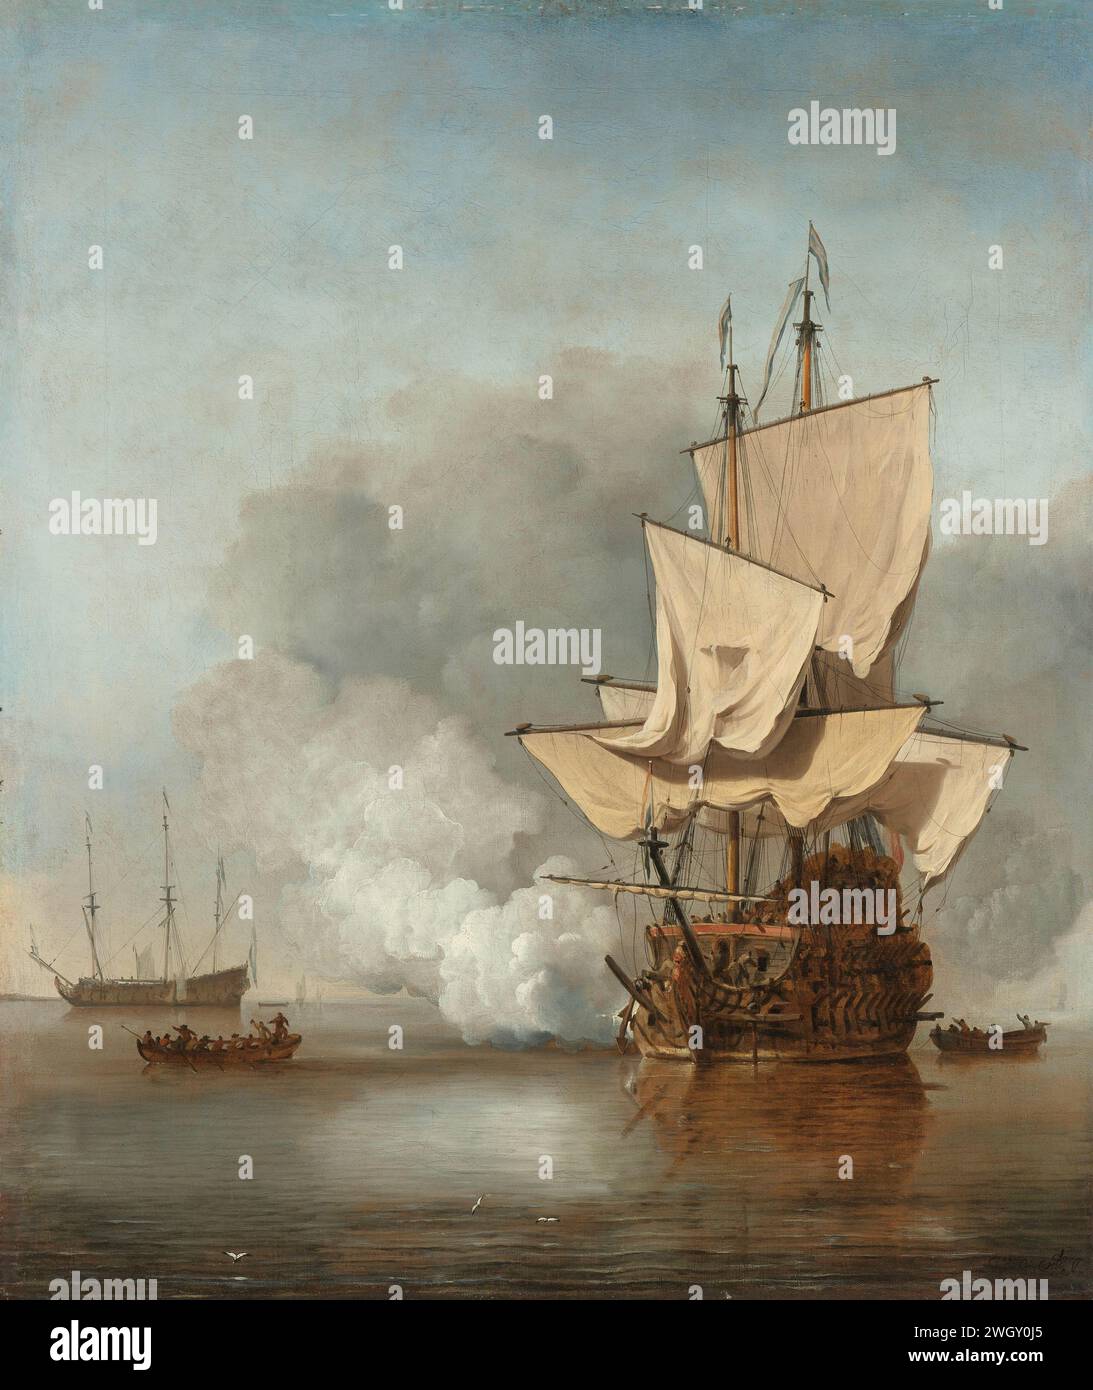 Der Kanonenschuss, Willem van de Velde (II), um 1680, das Bild des Kanonenschusses. Ein Kriegsschiff in Windstille mit schwachen Segeln löst einen Kanonenschuss auf. Zwei Slops auf beiden Seiten, ein weiteres Kriegsschiff in der Ferne, mit gebügelten Segeln. Anhänger von SK-A-1848. Leinwand. Ölfarbe (Farbe) Segelschiff, Segelboot. Kanonenschüsse (Militärsalute) Stockfoto